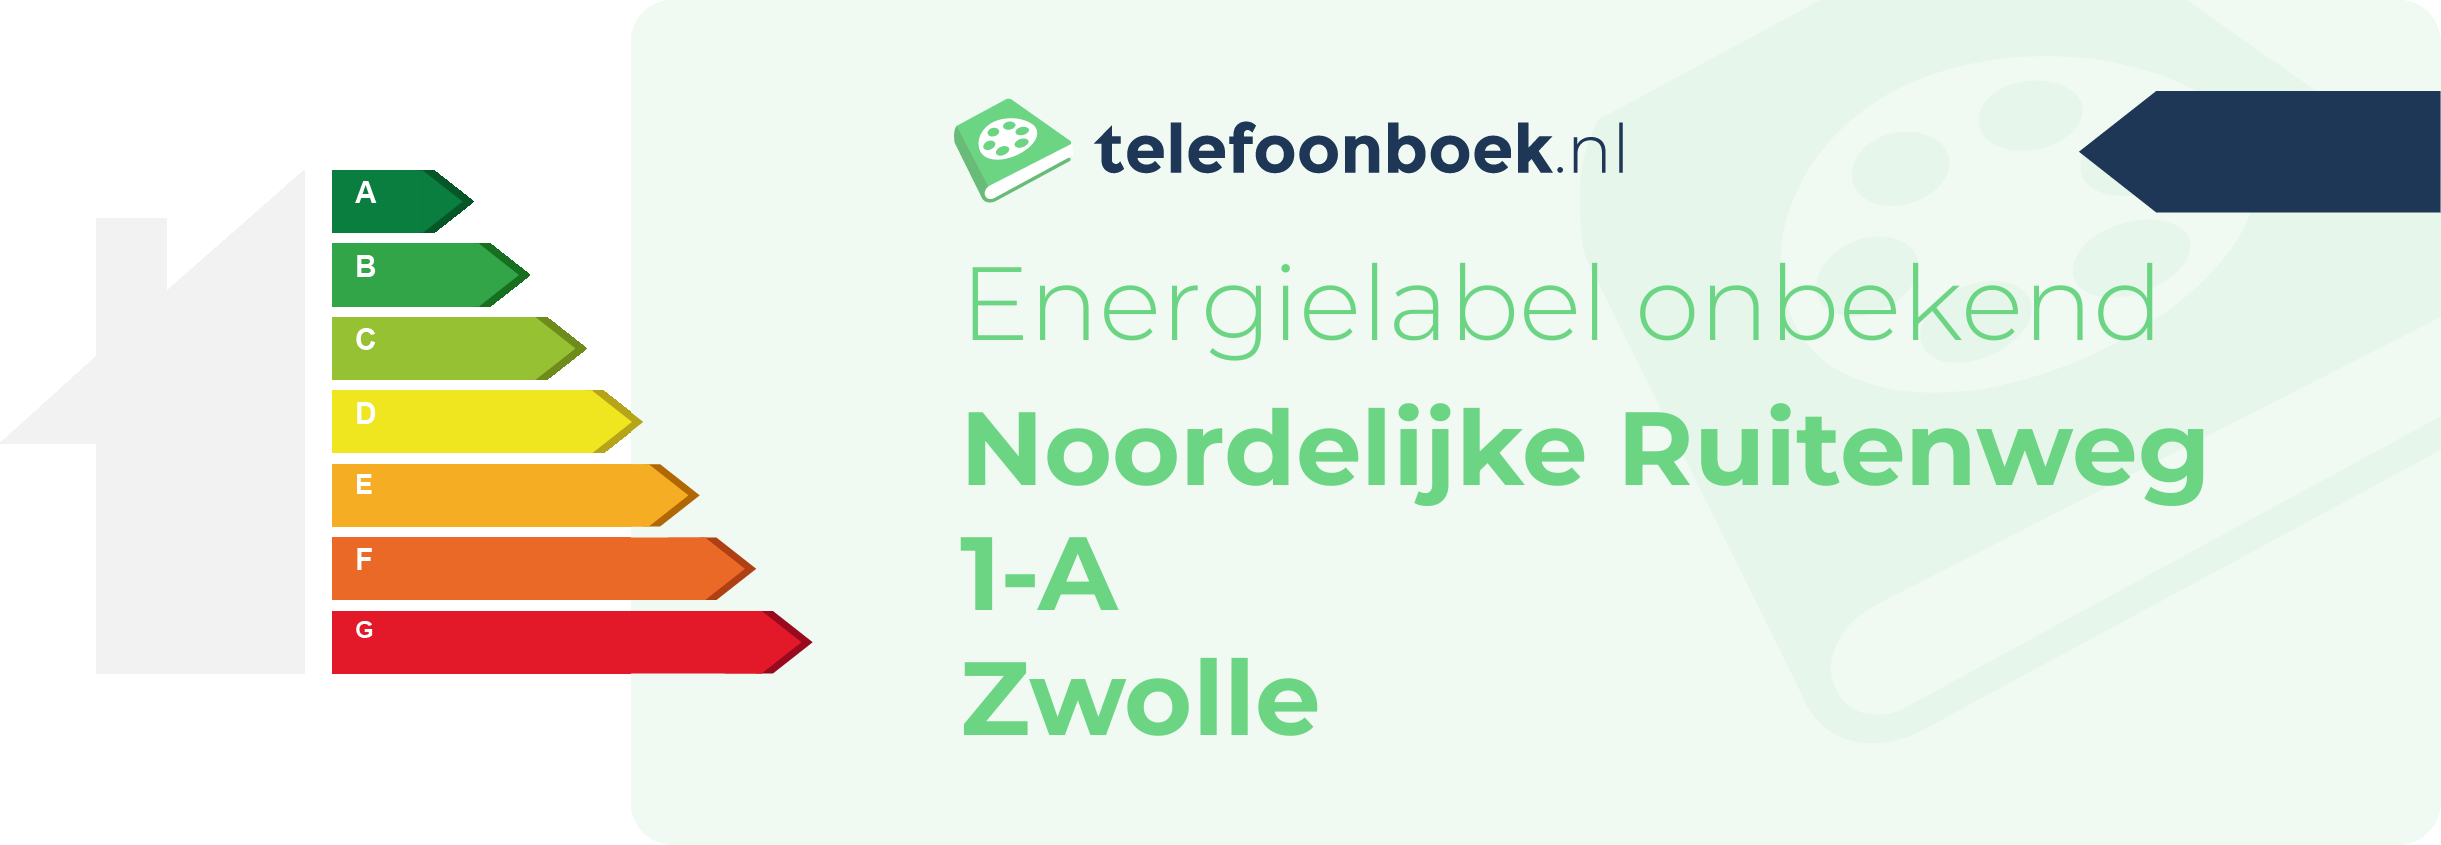 Energielabel Noordelijke Ruitenweg 1-A Zwolle